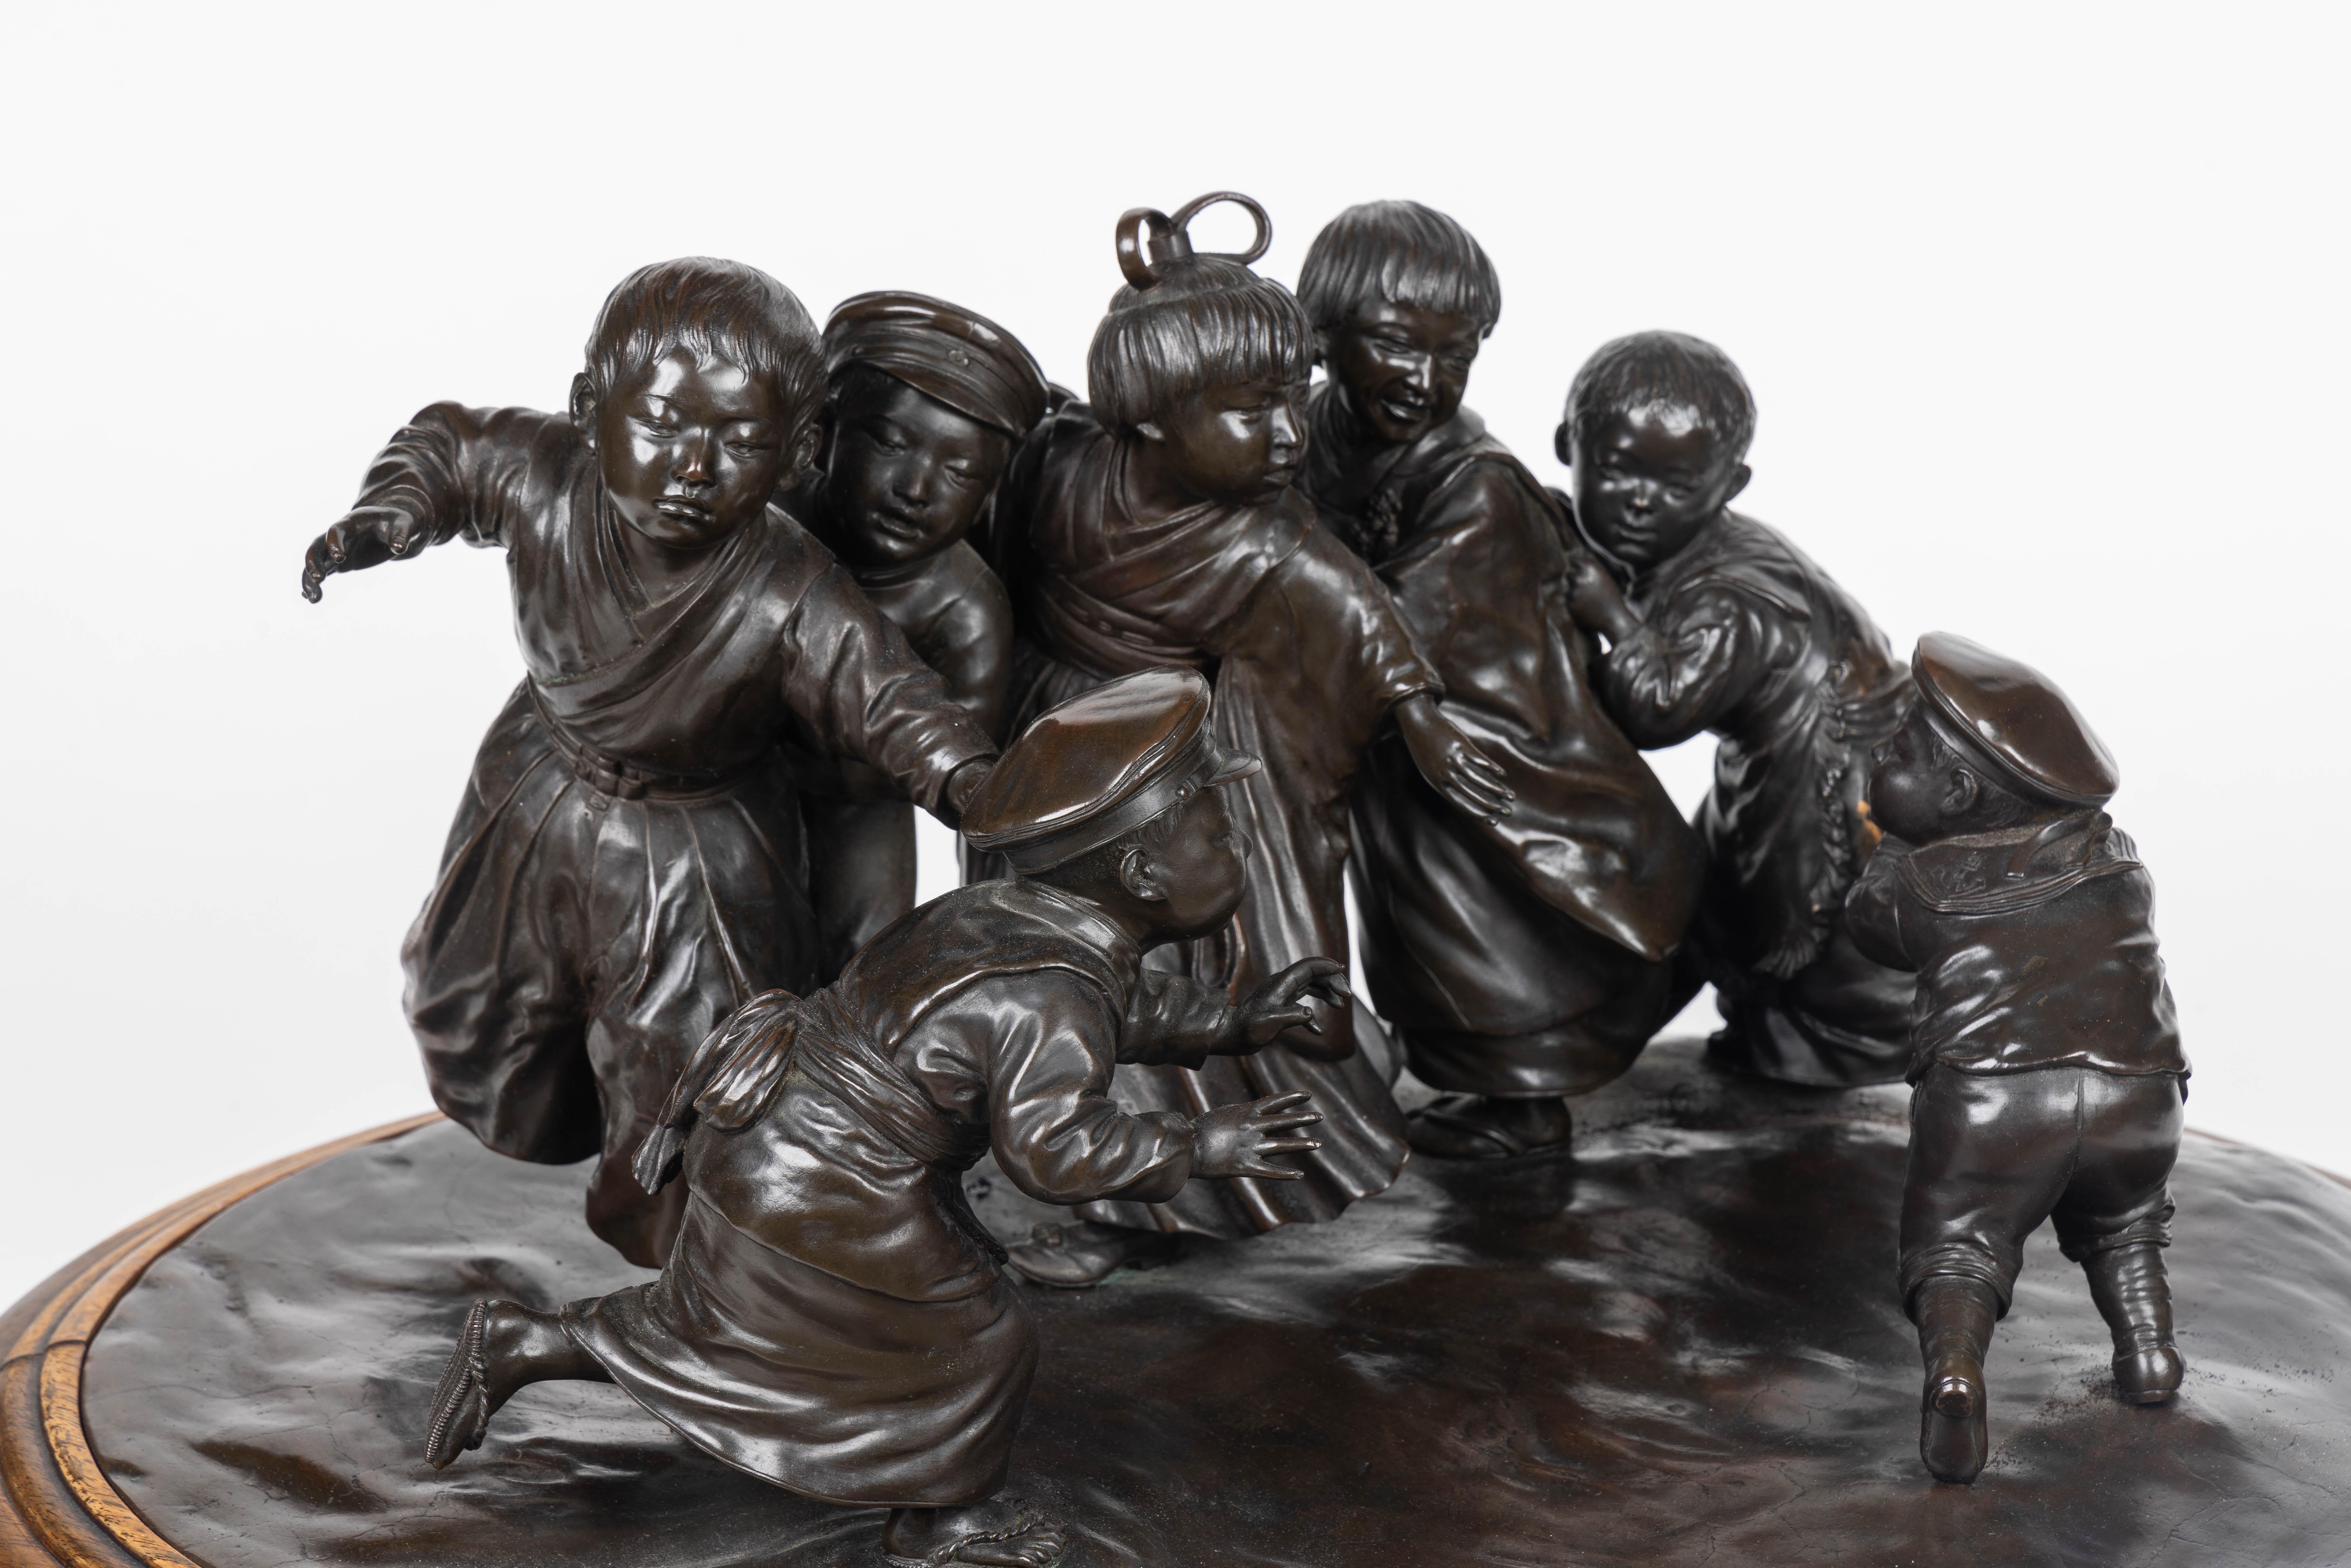 Wir präsentieren eine außerordentlich große und außergewöhnliche japanische Bronzeskulptur aus der Meiji-Periode der Tokioter Schule, die ein entzückendes Ensemble von sechs energischen Jungen darstellt, die ein einzelnes verspieltes Mädchen beherzt